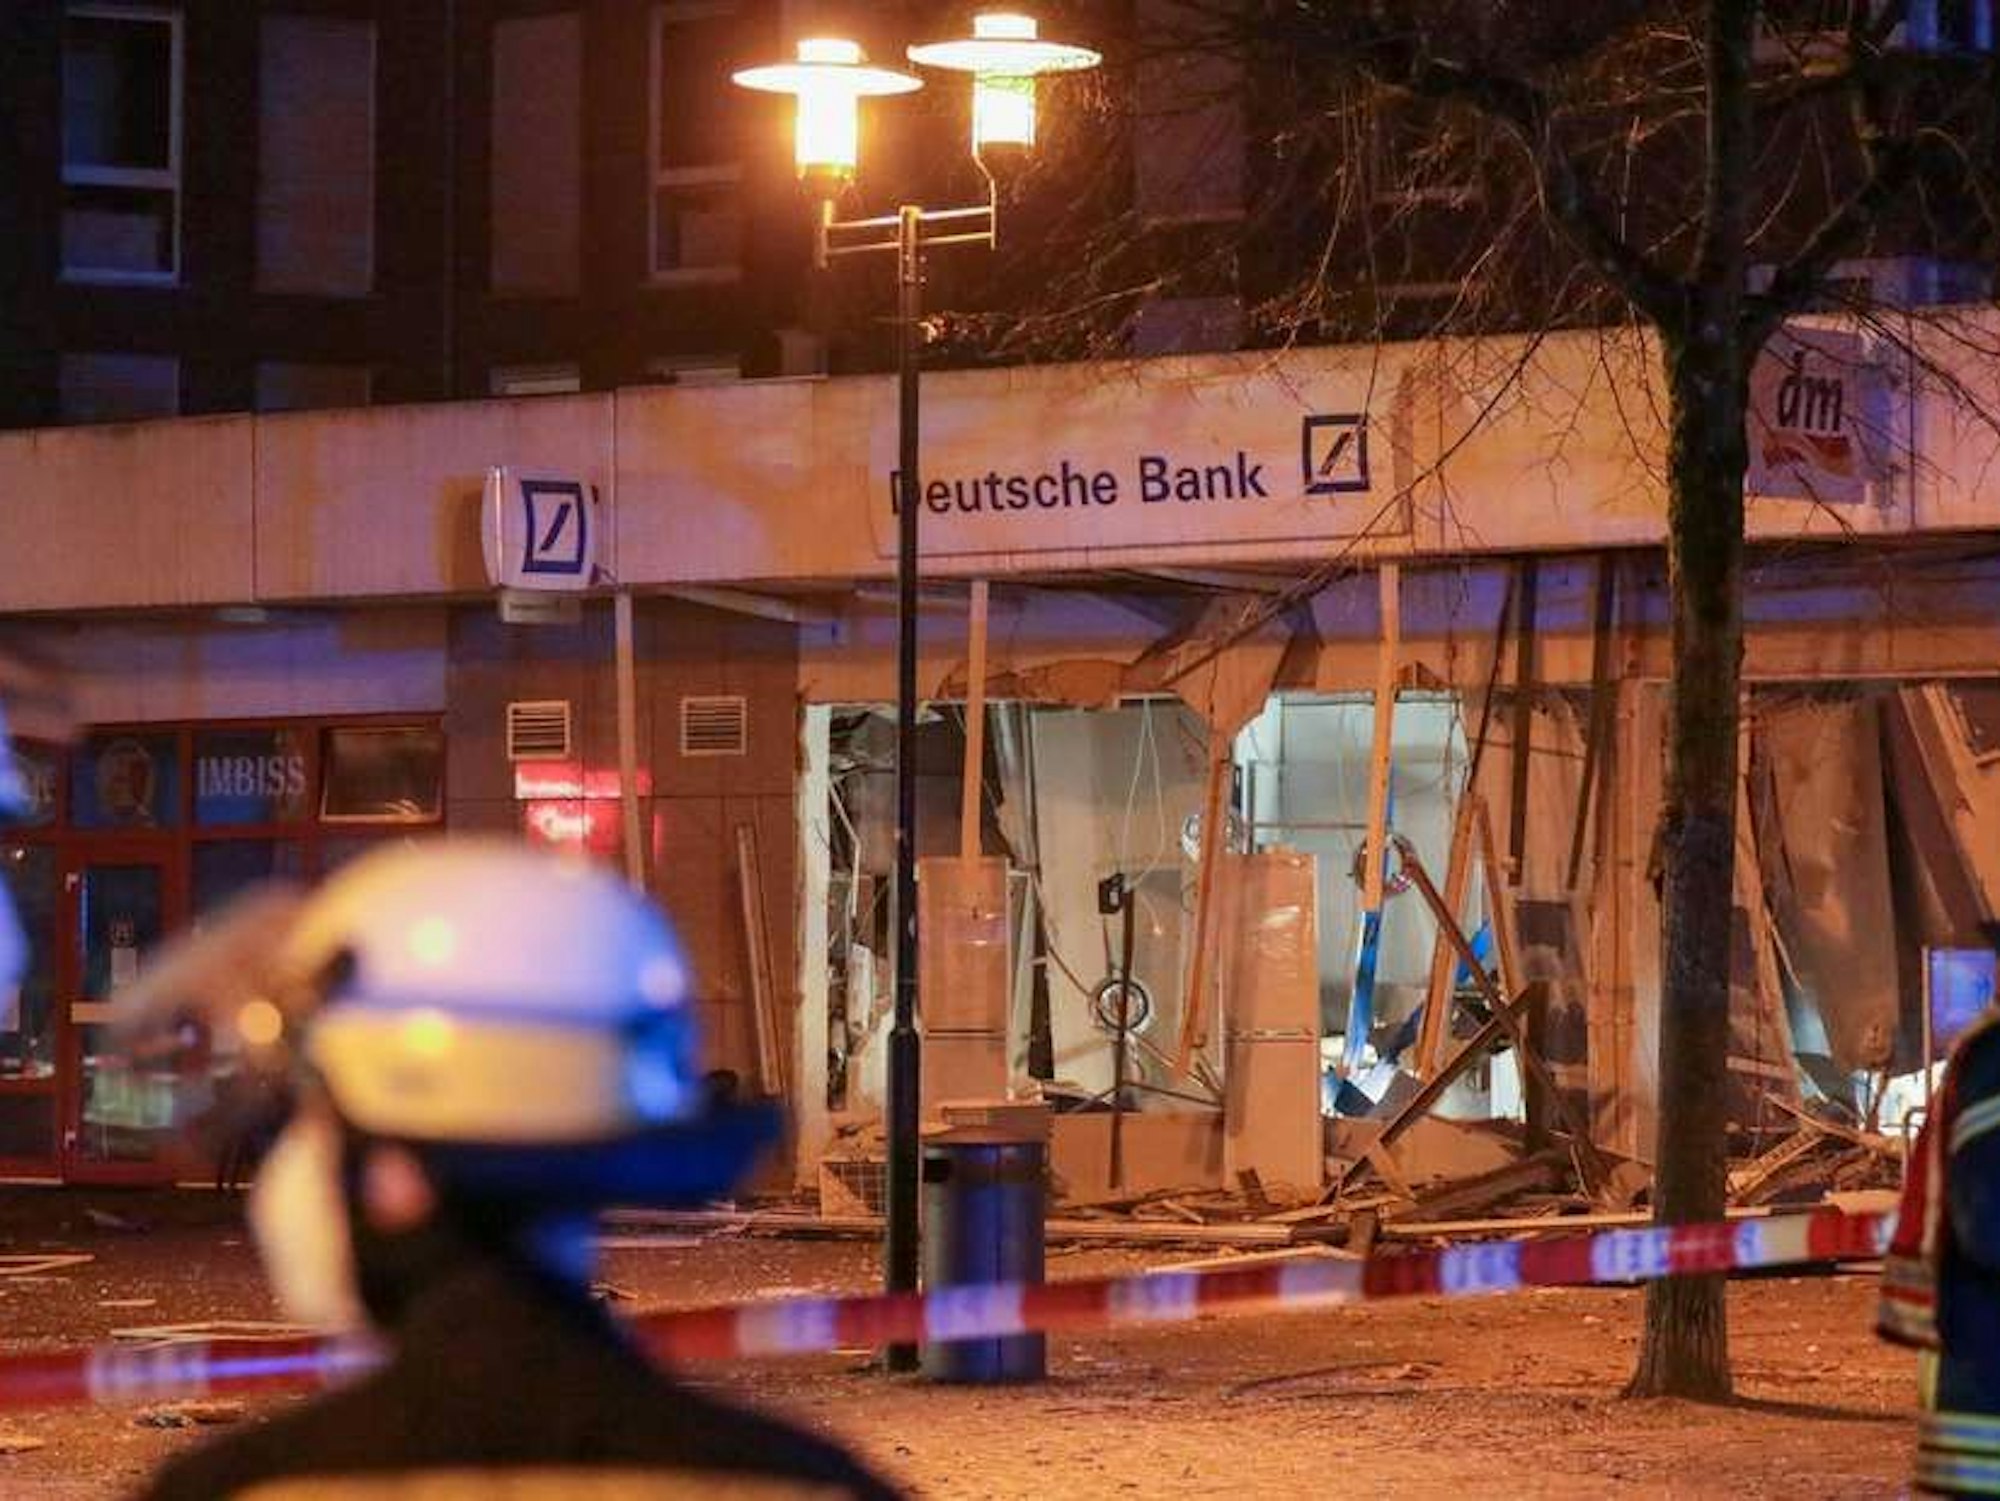 Einsatzkräfte der Feuerwehr stehen vor einer durch eine Explosion stark beschädigten Deutsche Bank-Filiale.